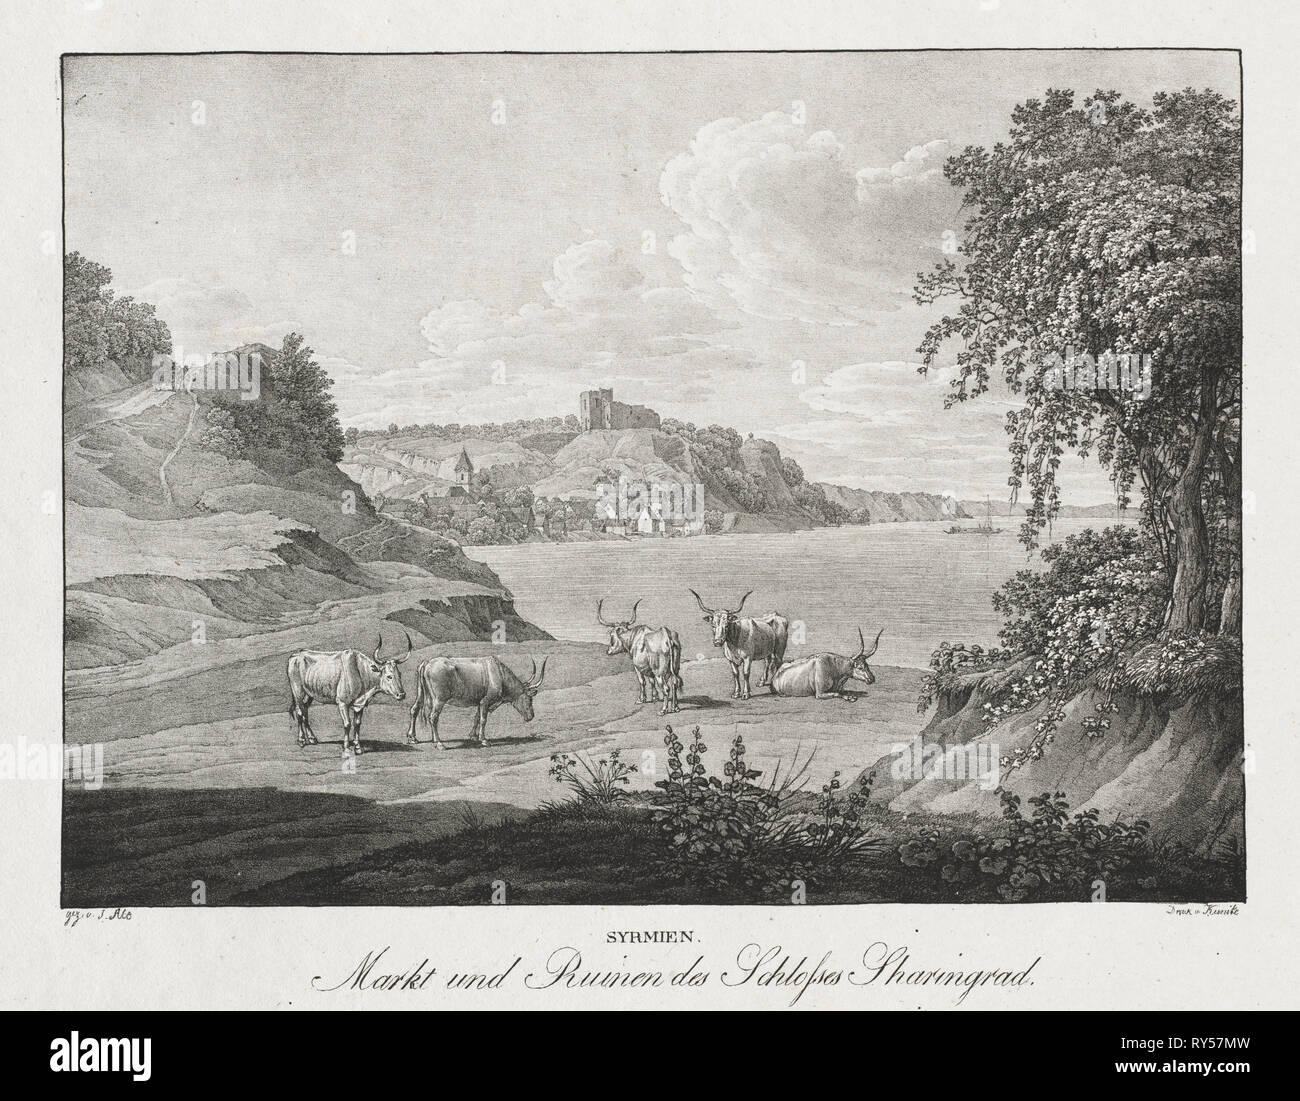 Syrmien, Markt und Ruinen des Schlosses Sharengrad. Jakob Alt (Austrian, 1789-1872). Lithograph Stock Photo